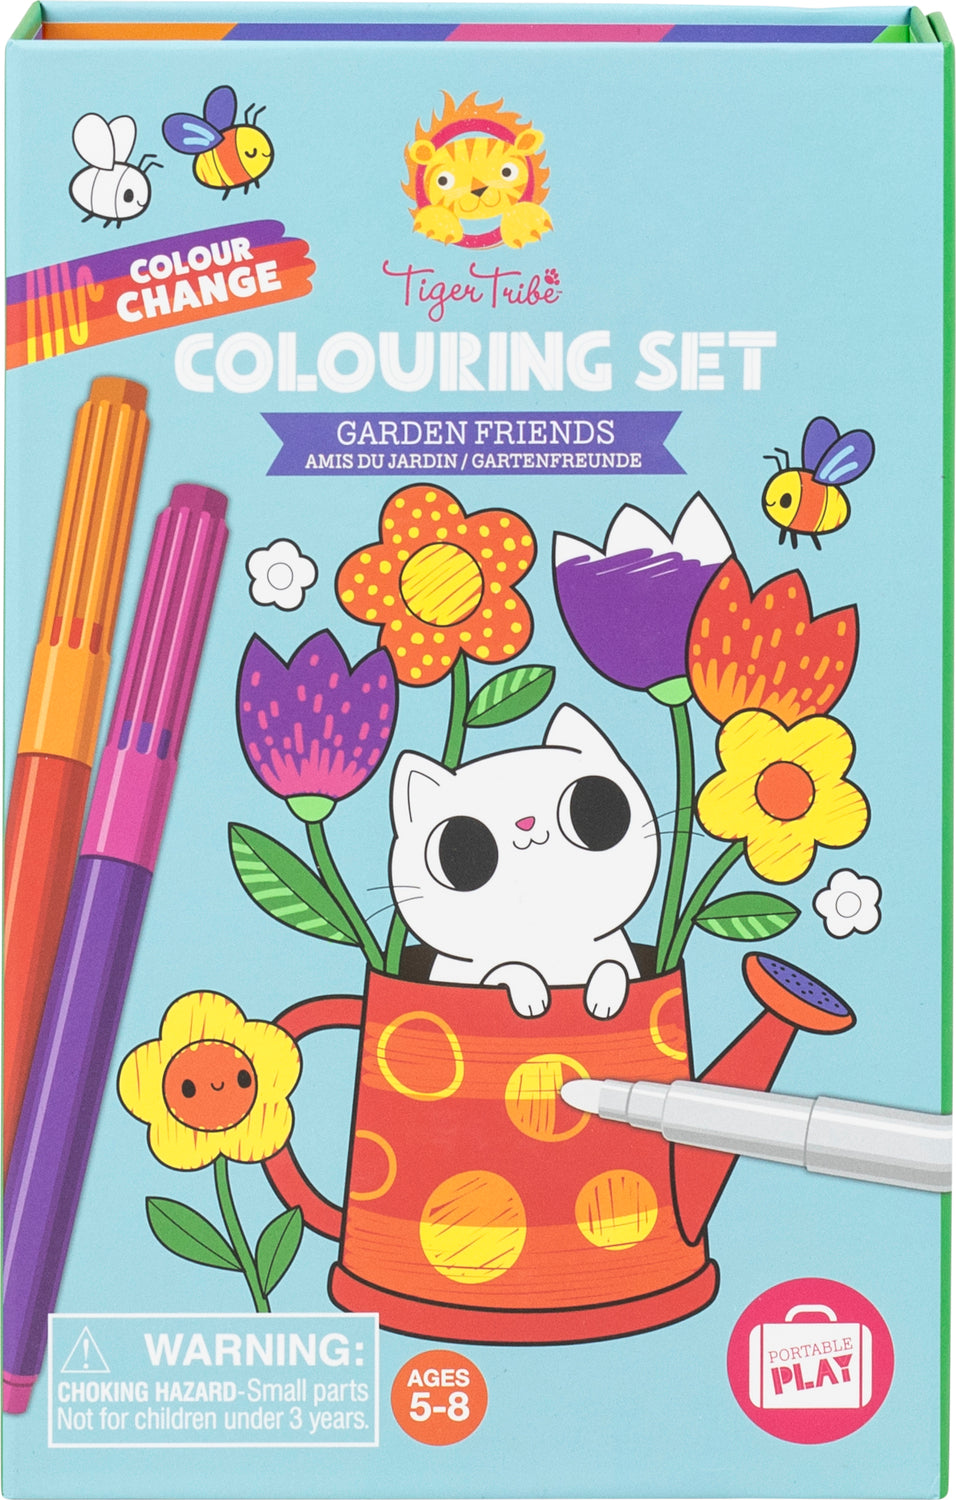 Color Change Coloring Set - Garden Friends